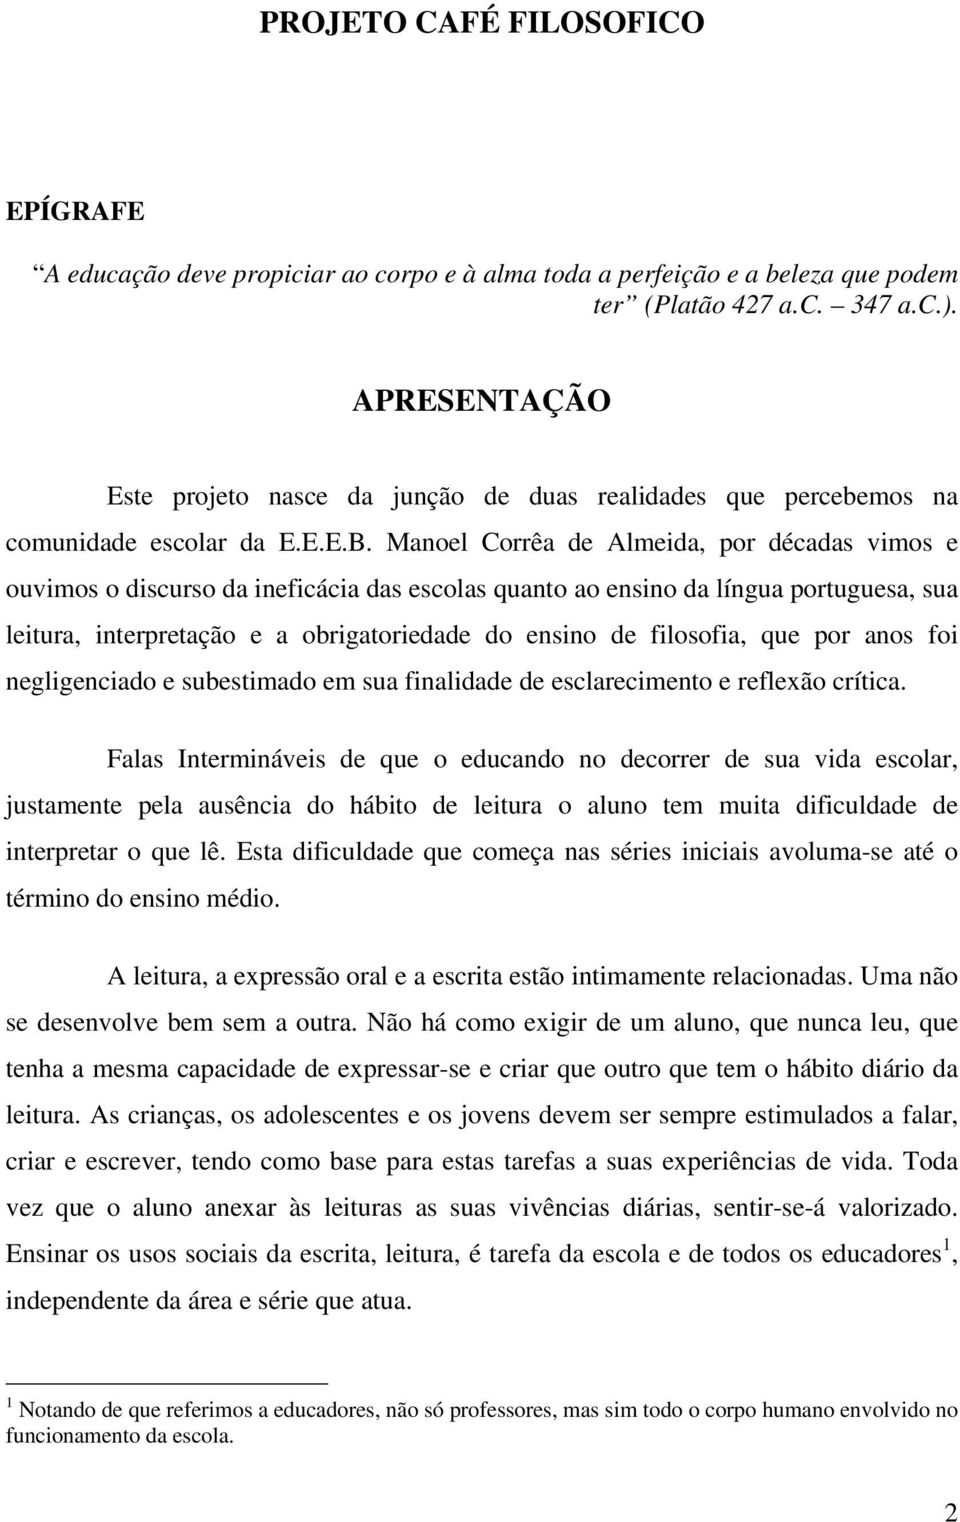 Manoel Corrêa de Almeida, por décadas vimos e ouvimos o discurso da ineficácia das escolas quanto ao ensino da língua portuguesa, sua leitura, interpretação e a obrigatoriedade do ensino de